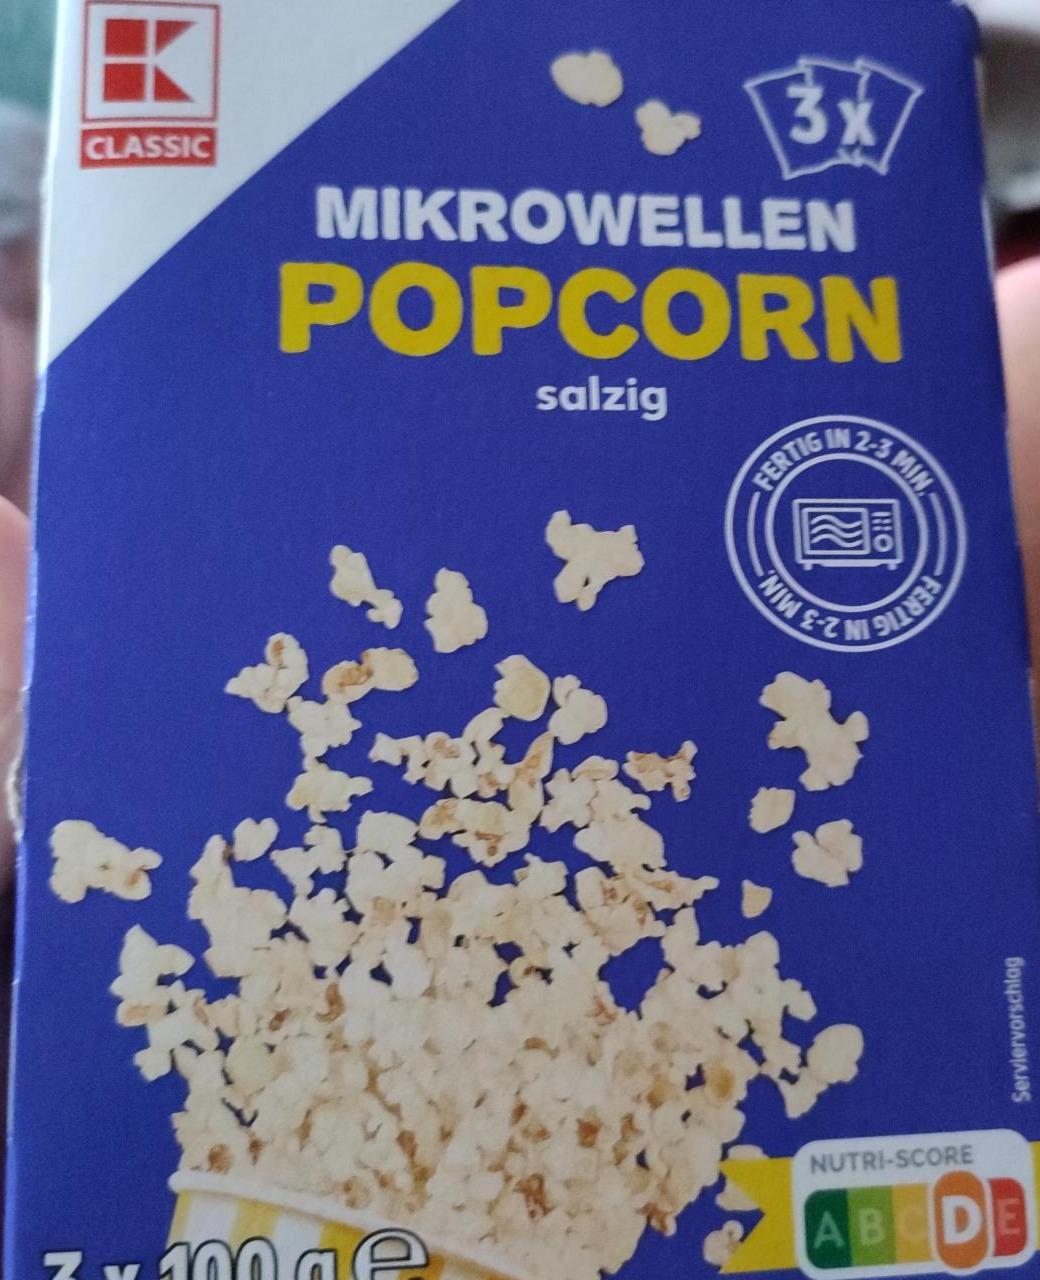 Fotografie - Mikrowellen Popcorn salzig K-Classic